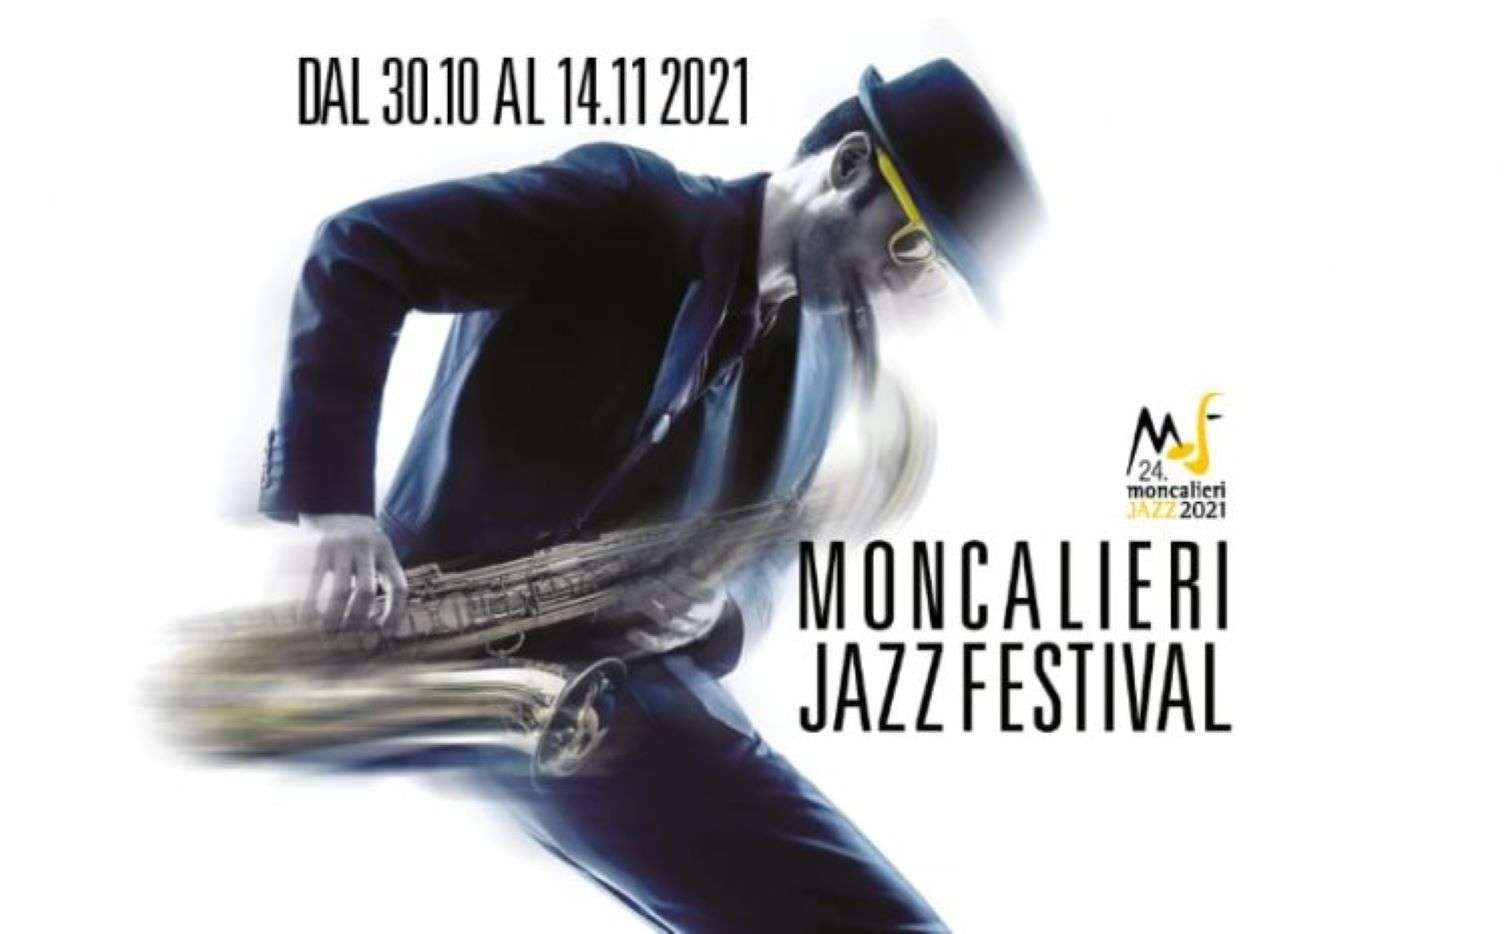 E’ ancora tempo di buona musica: ecco il Moncalieri Jazz Festival